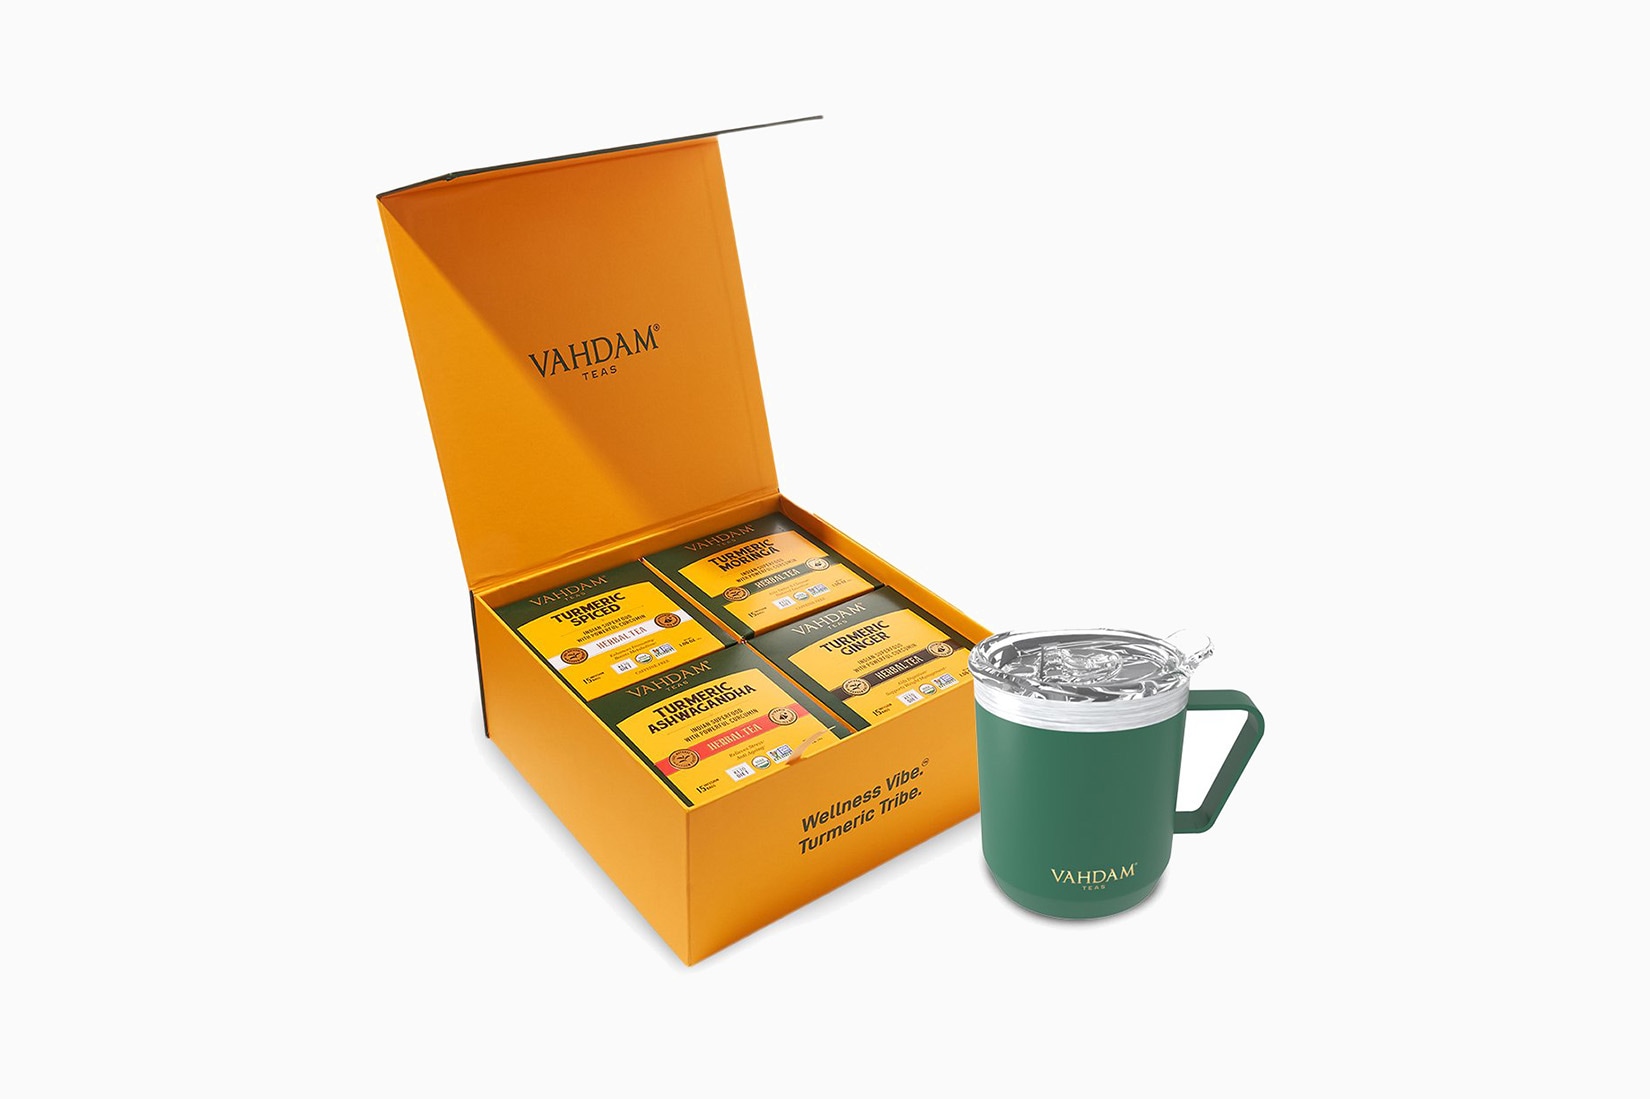 vahdam teas review turmeric wellness starter kit luxe digital